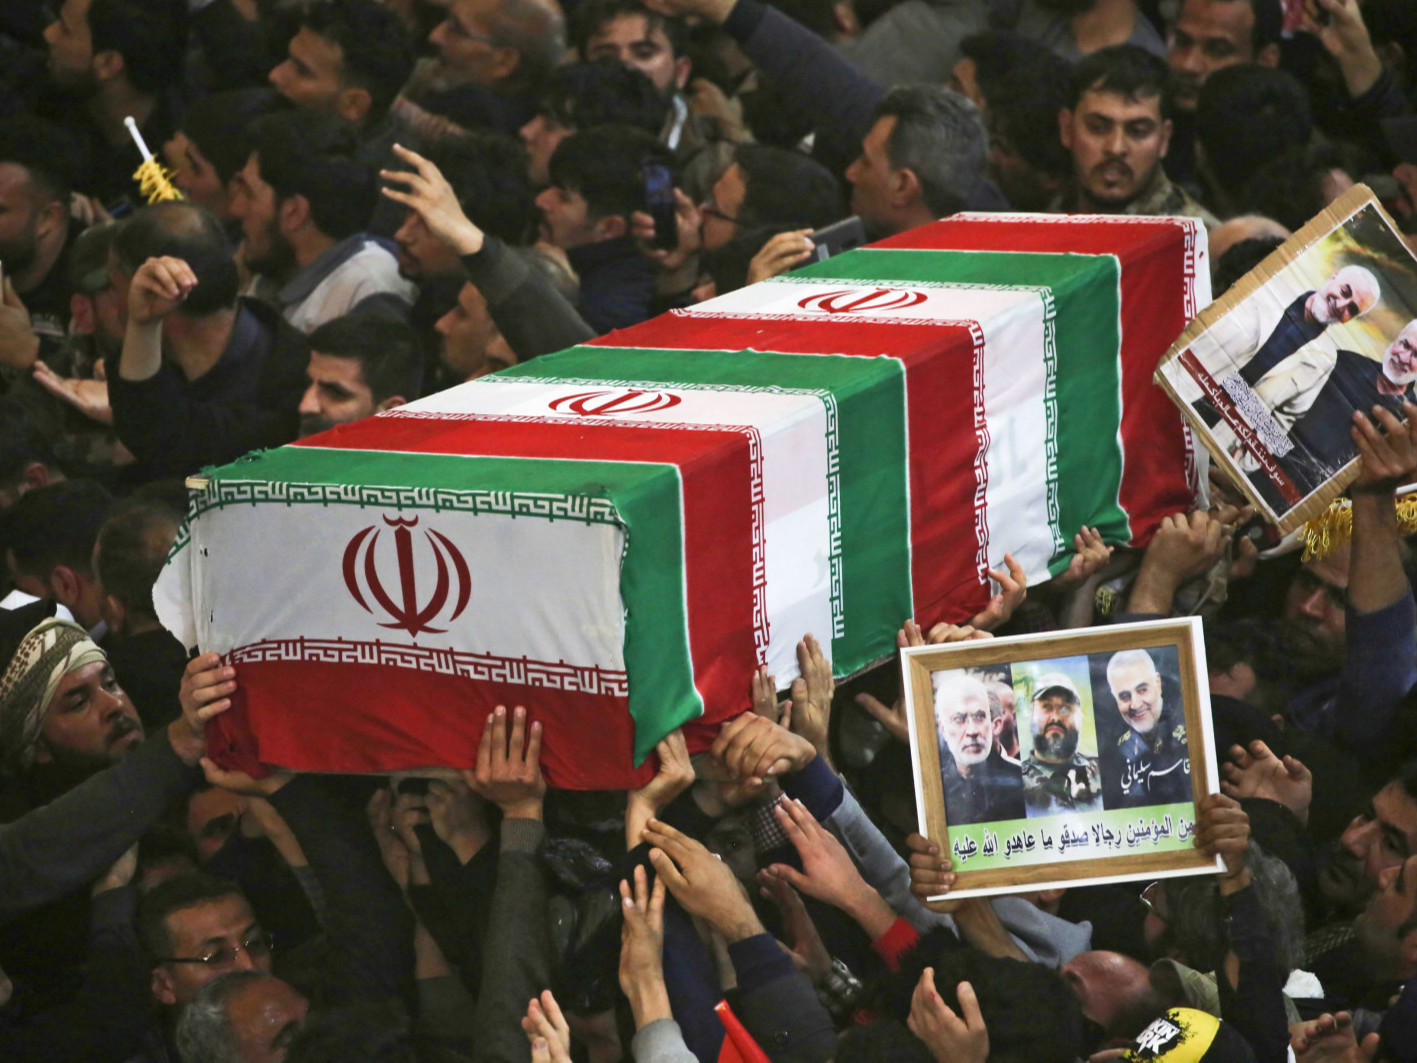 Иран удирдагчынхаа өшөөг авахын тулд АНУ-ын Элчин сайдыг хөнөөхөөр оролдож байна